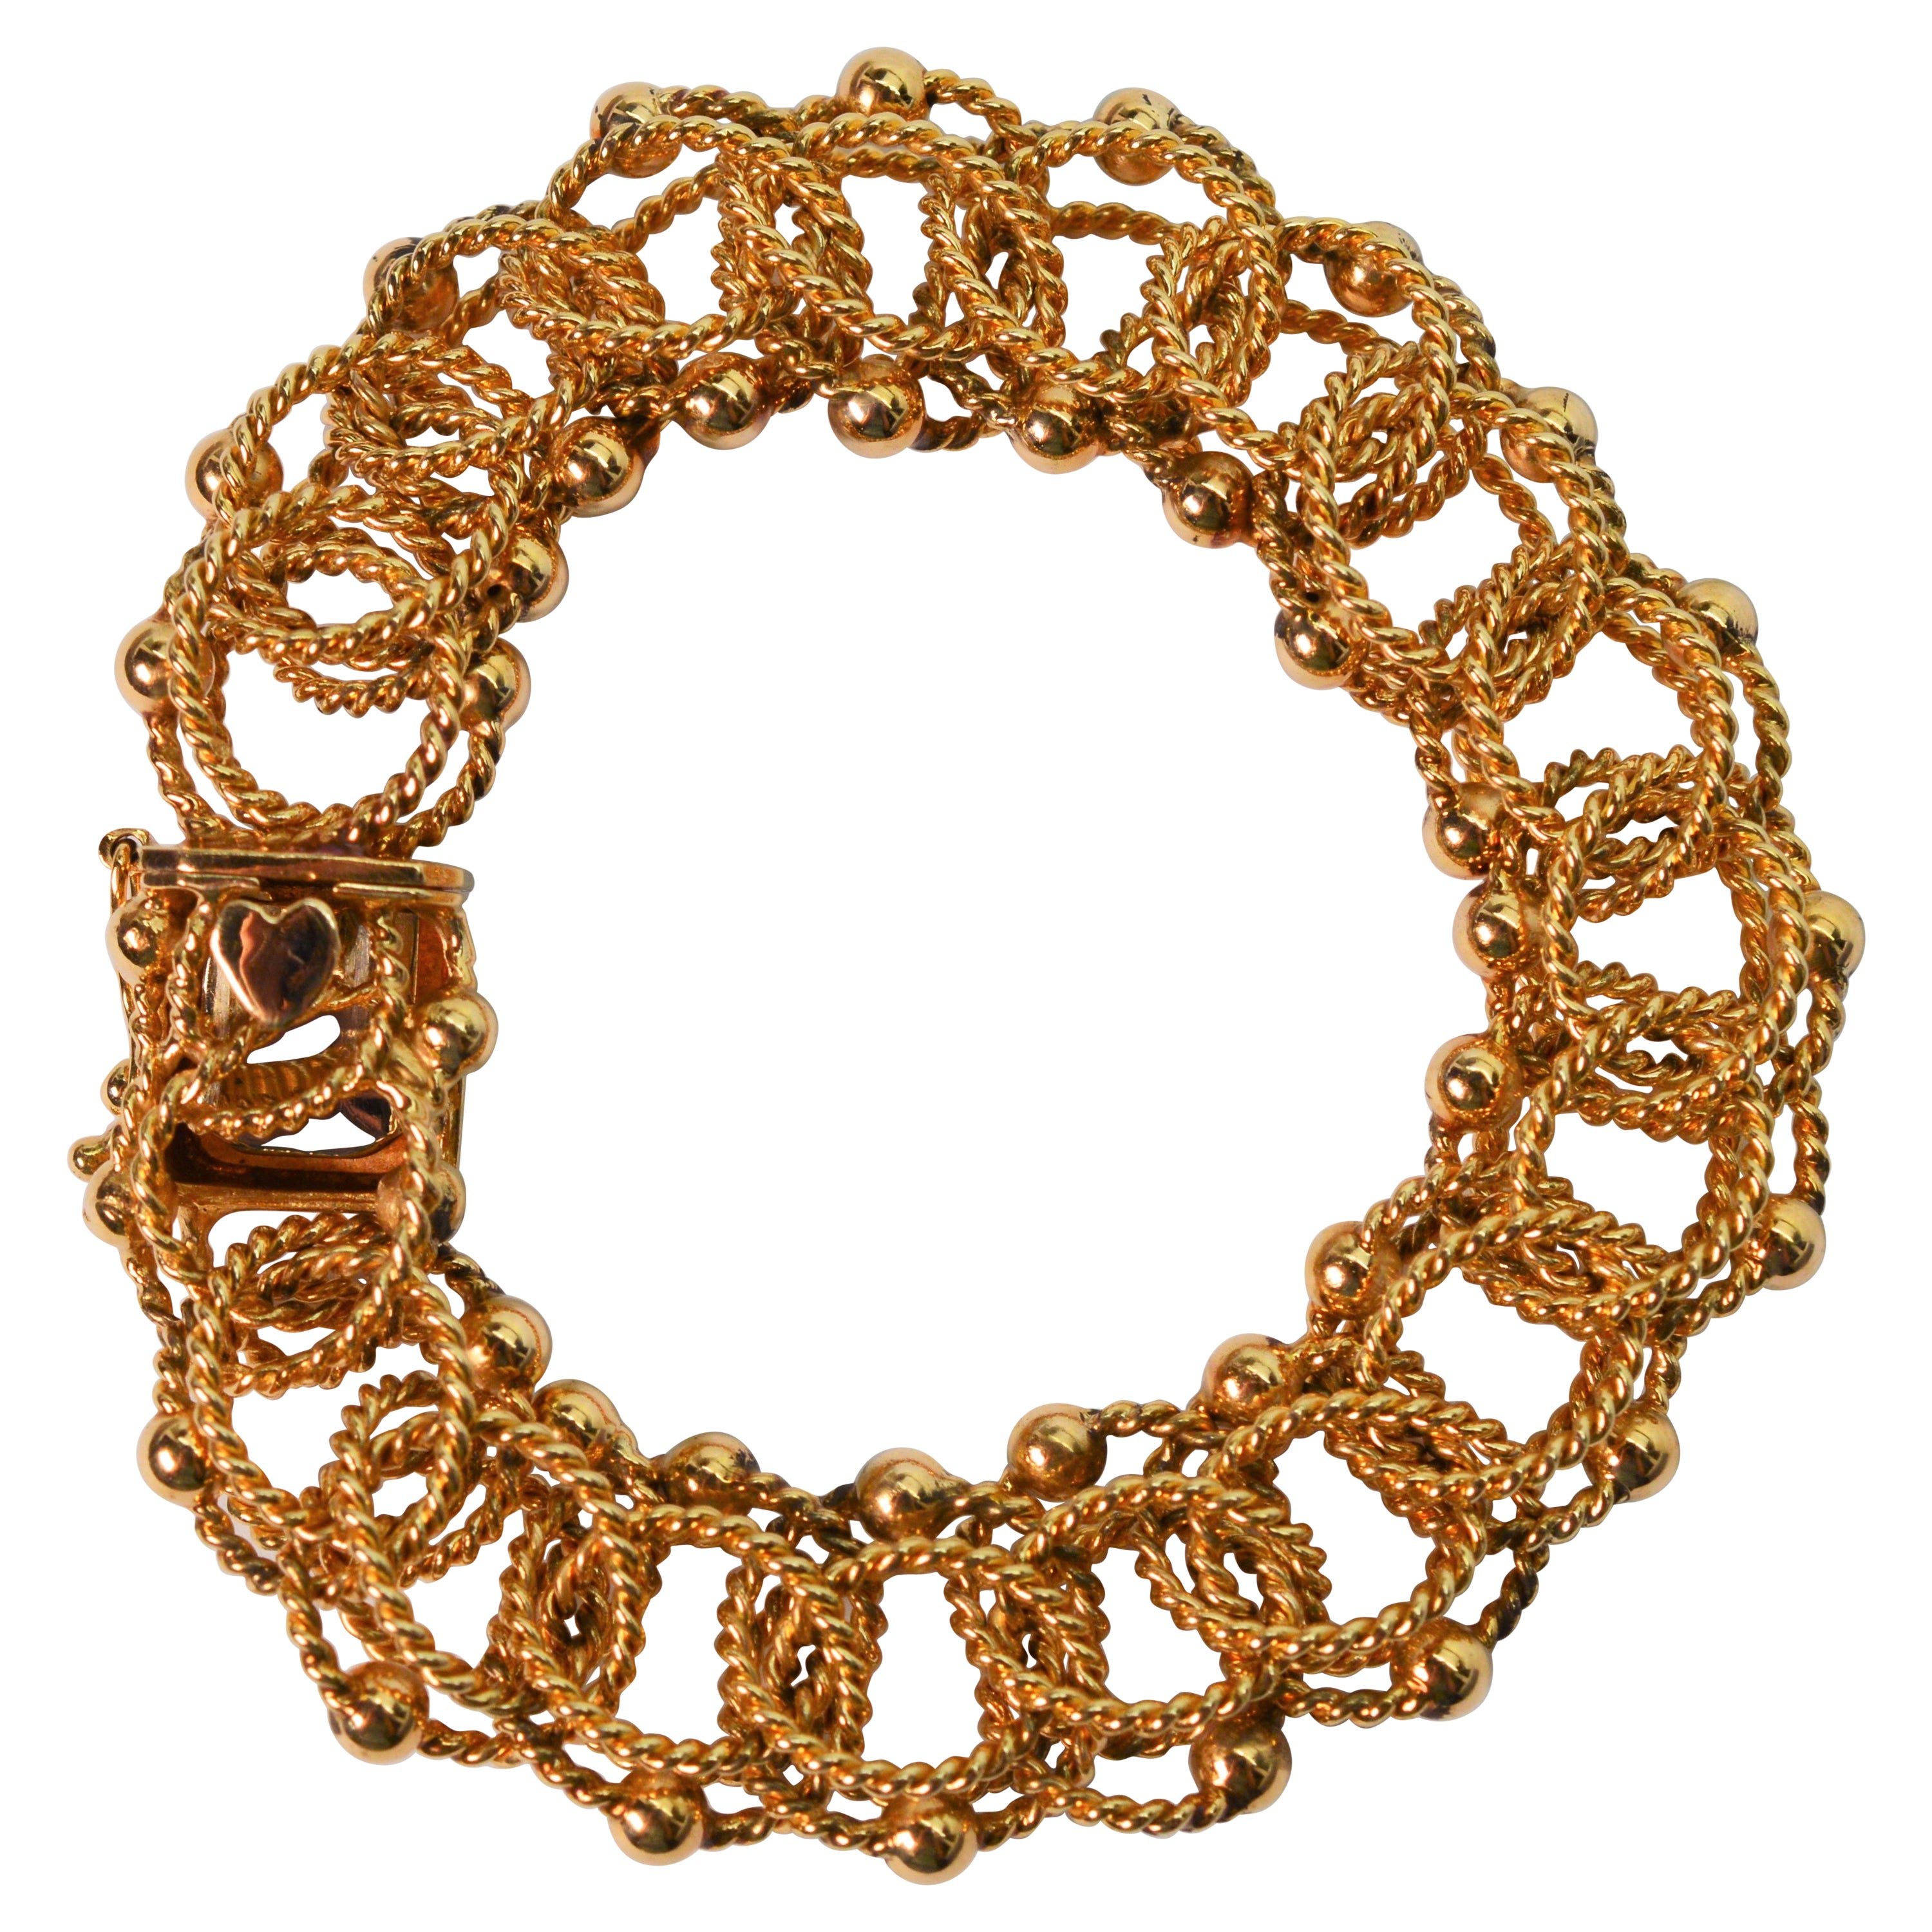 Dreifaches Gold Seil gedrehtes Gliederarmband aus 14K Gelbgold